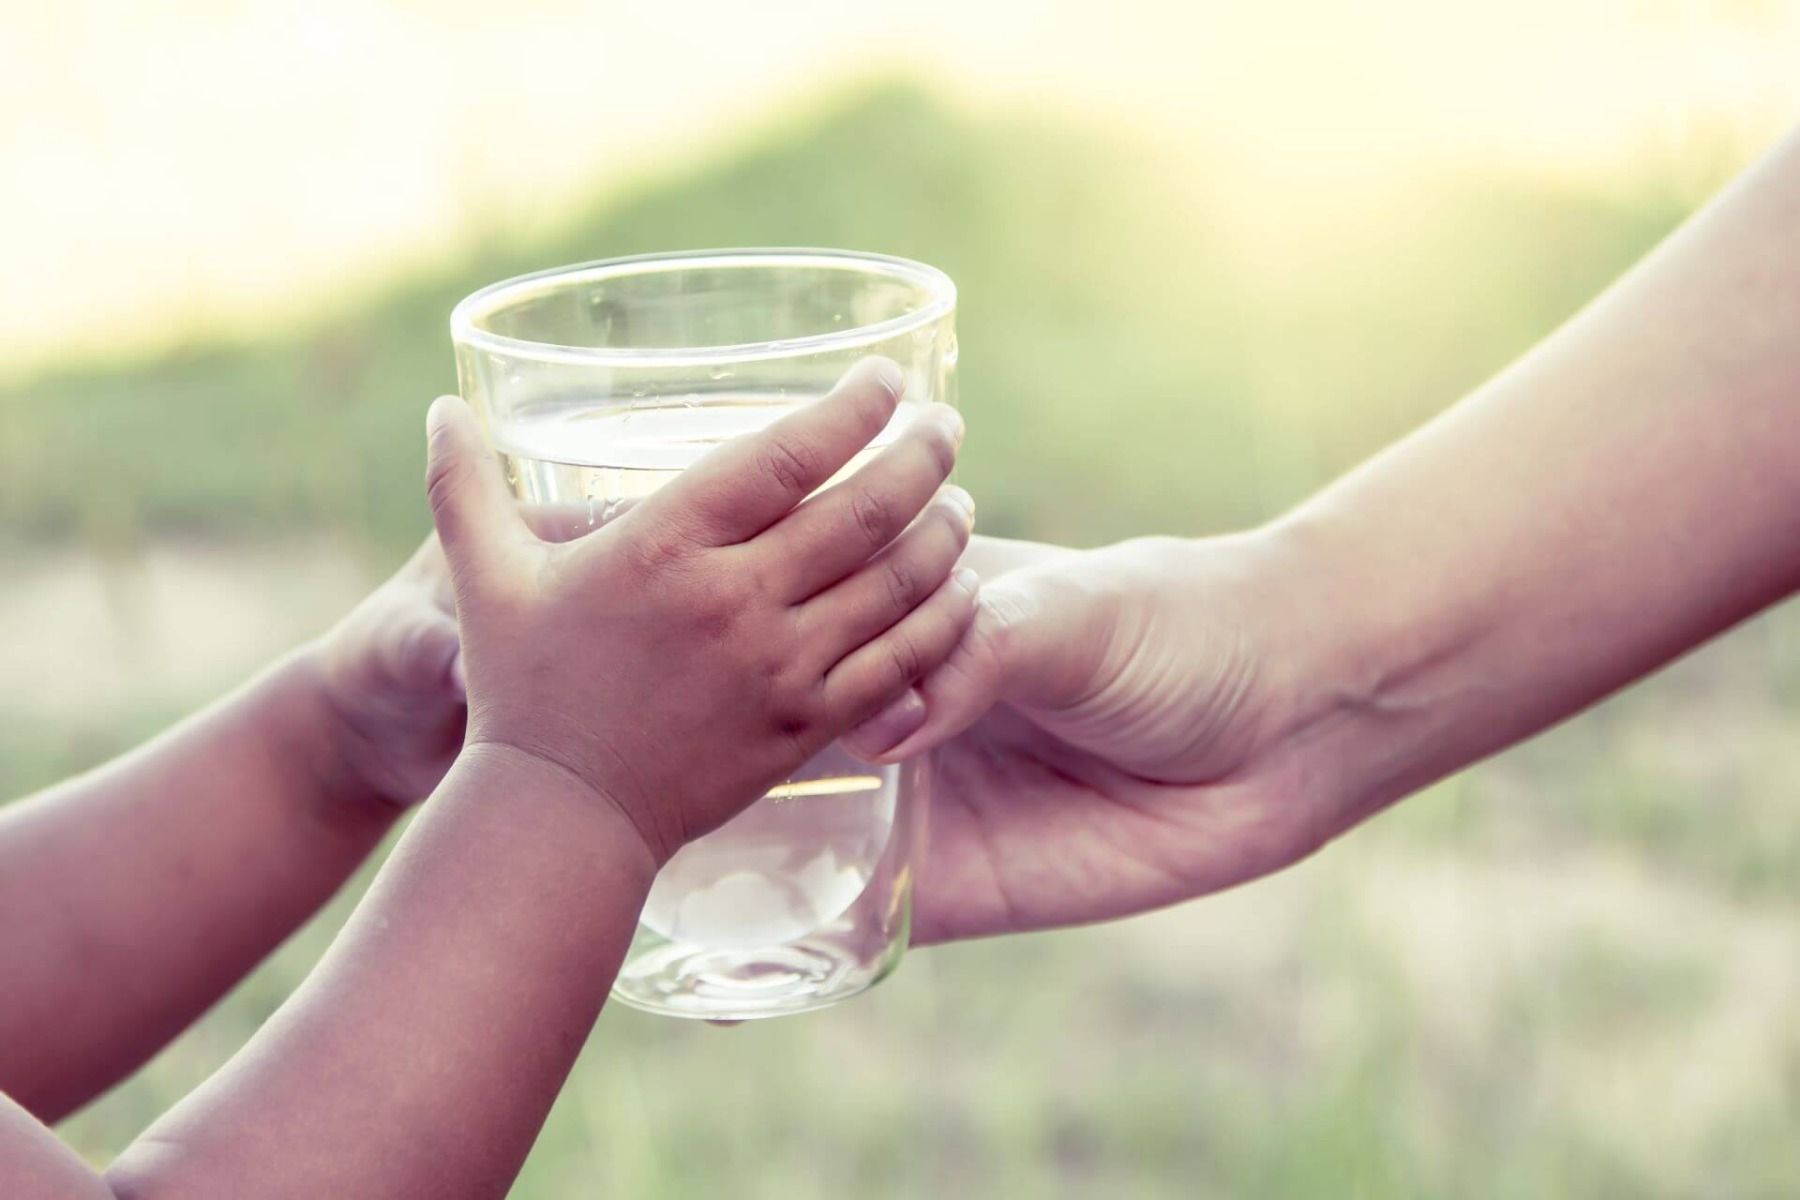 szklanka wody w rękach dziecka